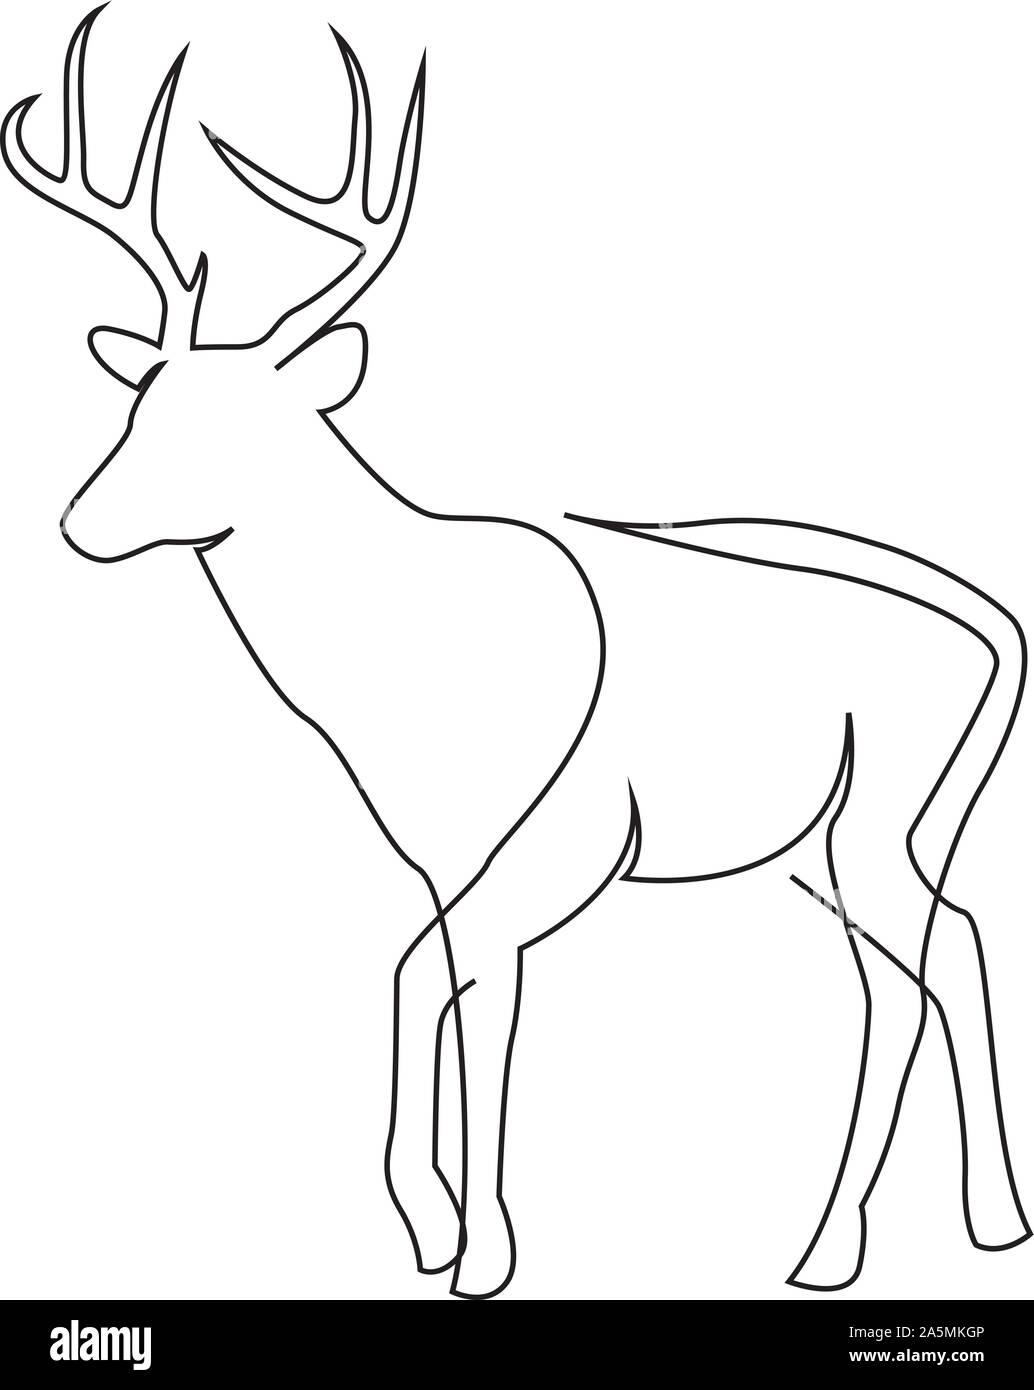 Una linea design silhouette di cervi. Disegnata a mano singola linea continua stile minimalista illustrazione vettoriale Illustrazione Vettoriale